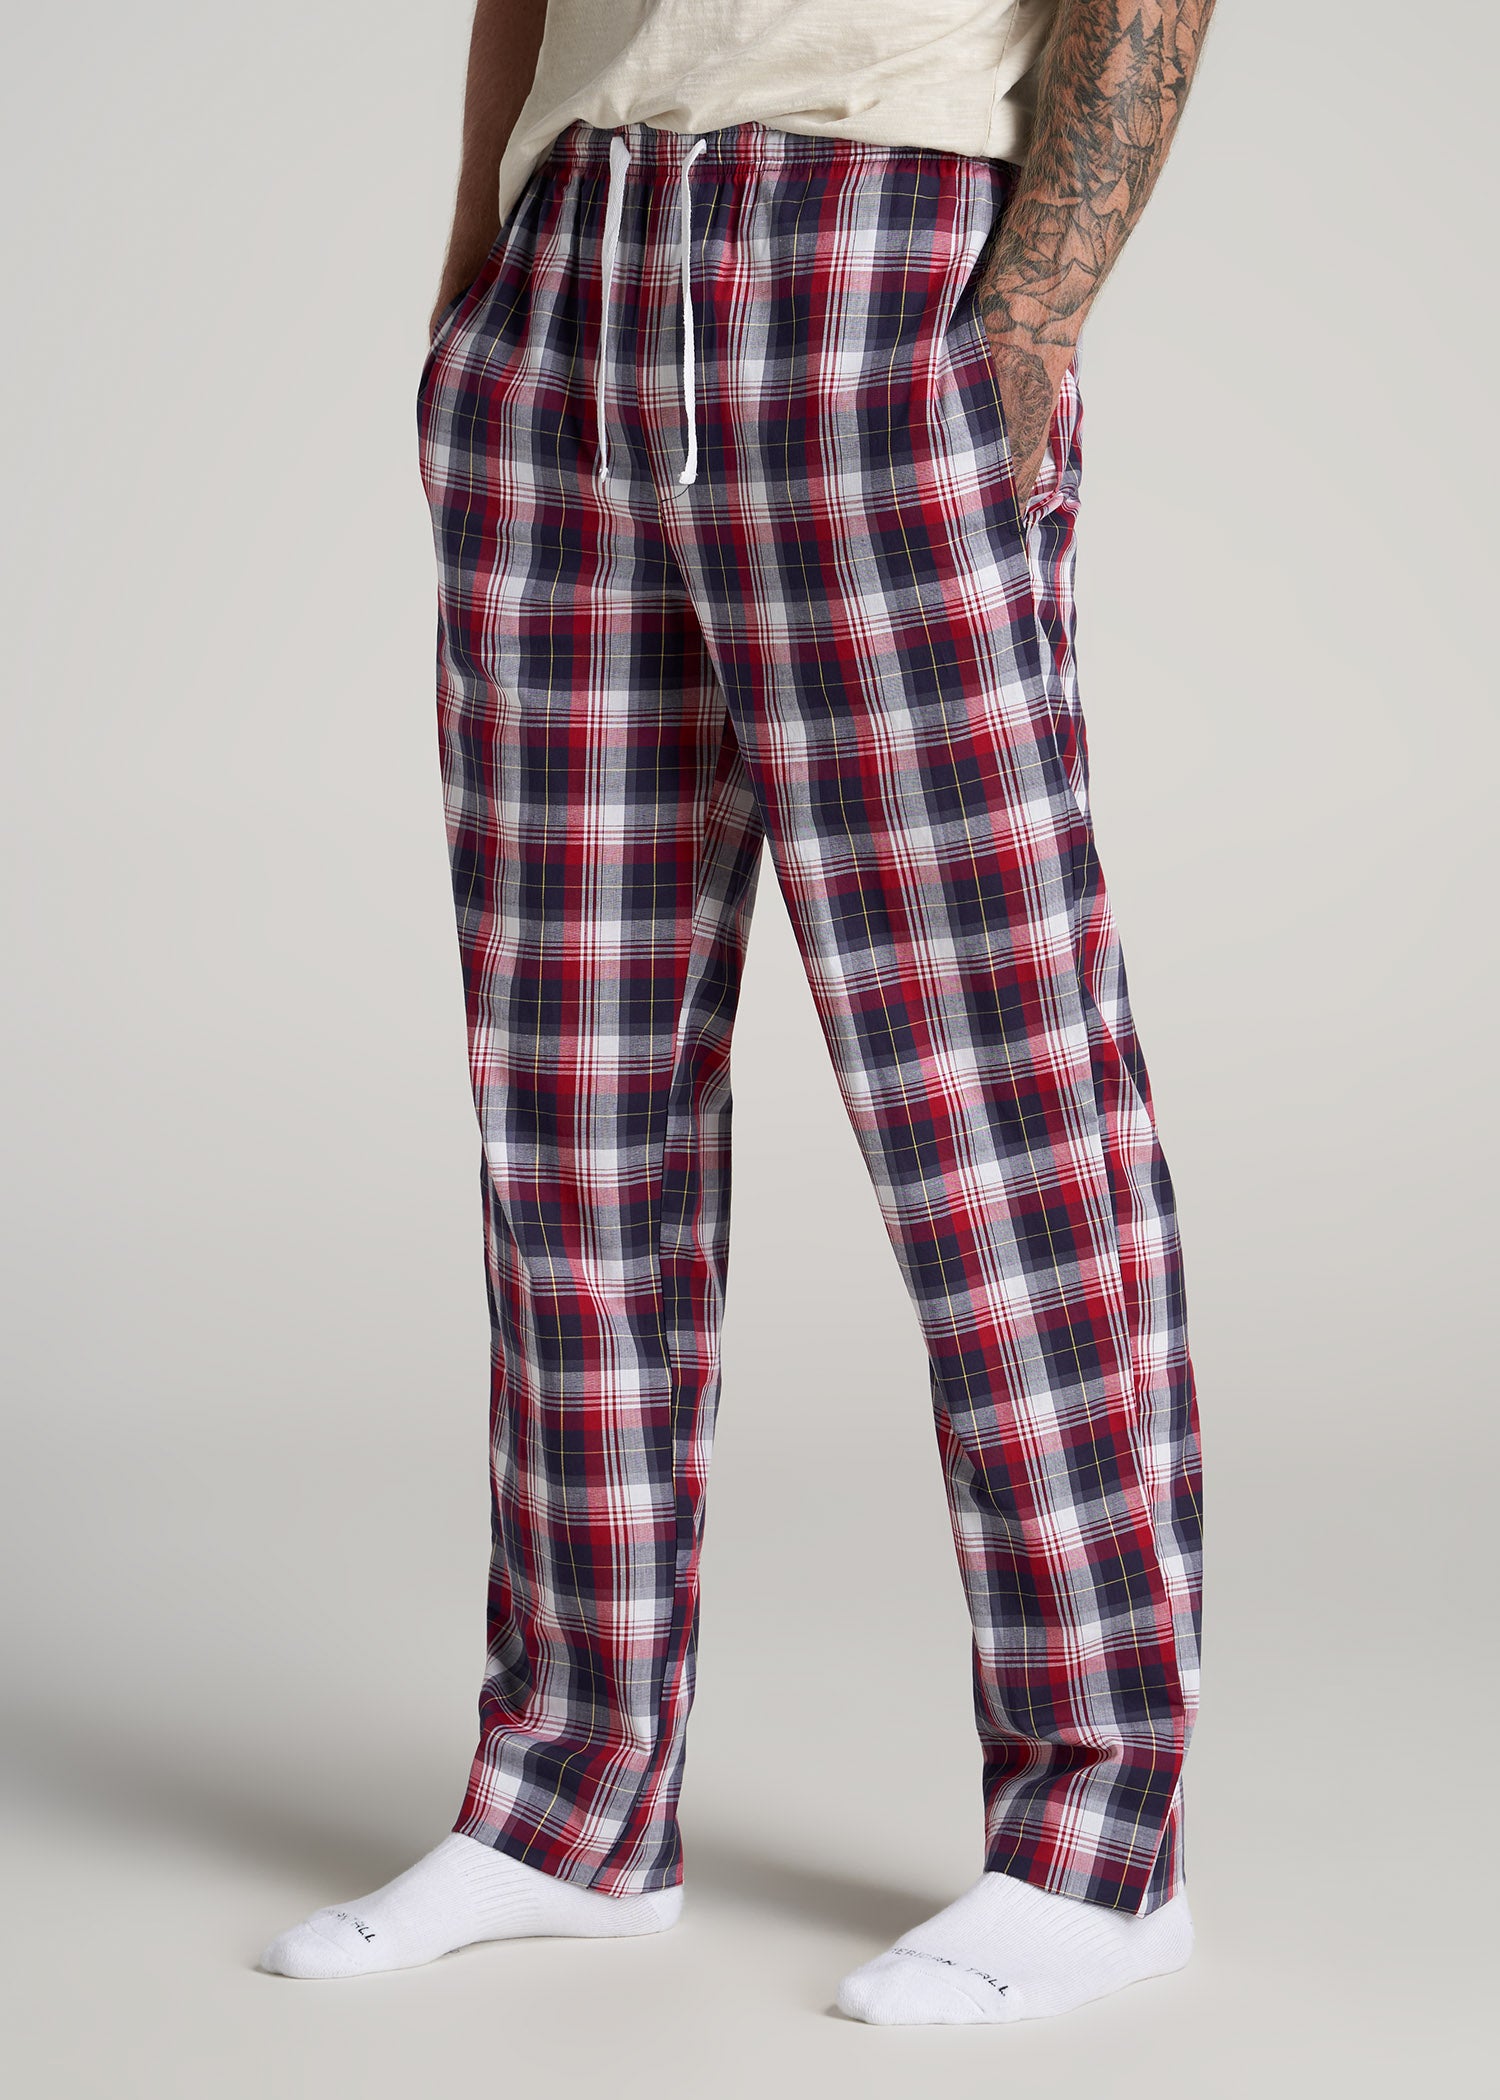 Uitdrukkelijk Betrouwbaar Overtreffen Woven Pajama Pants for Tall Men | American Tall